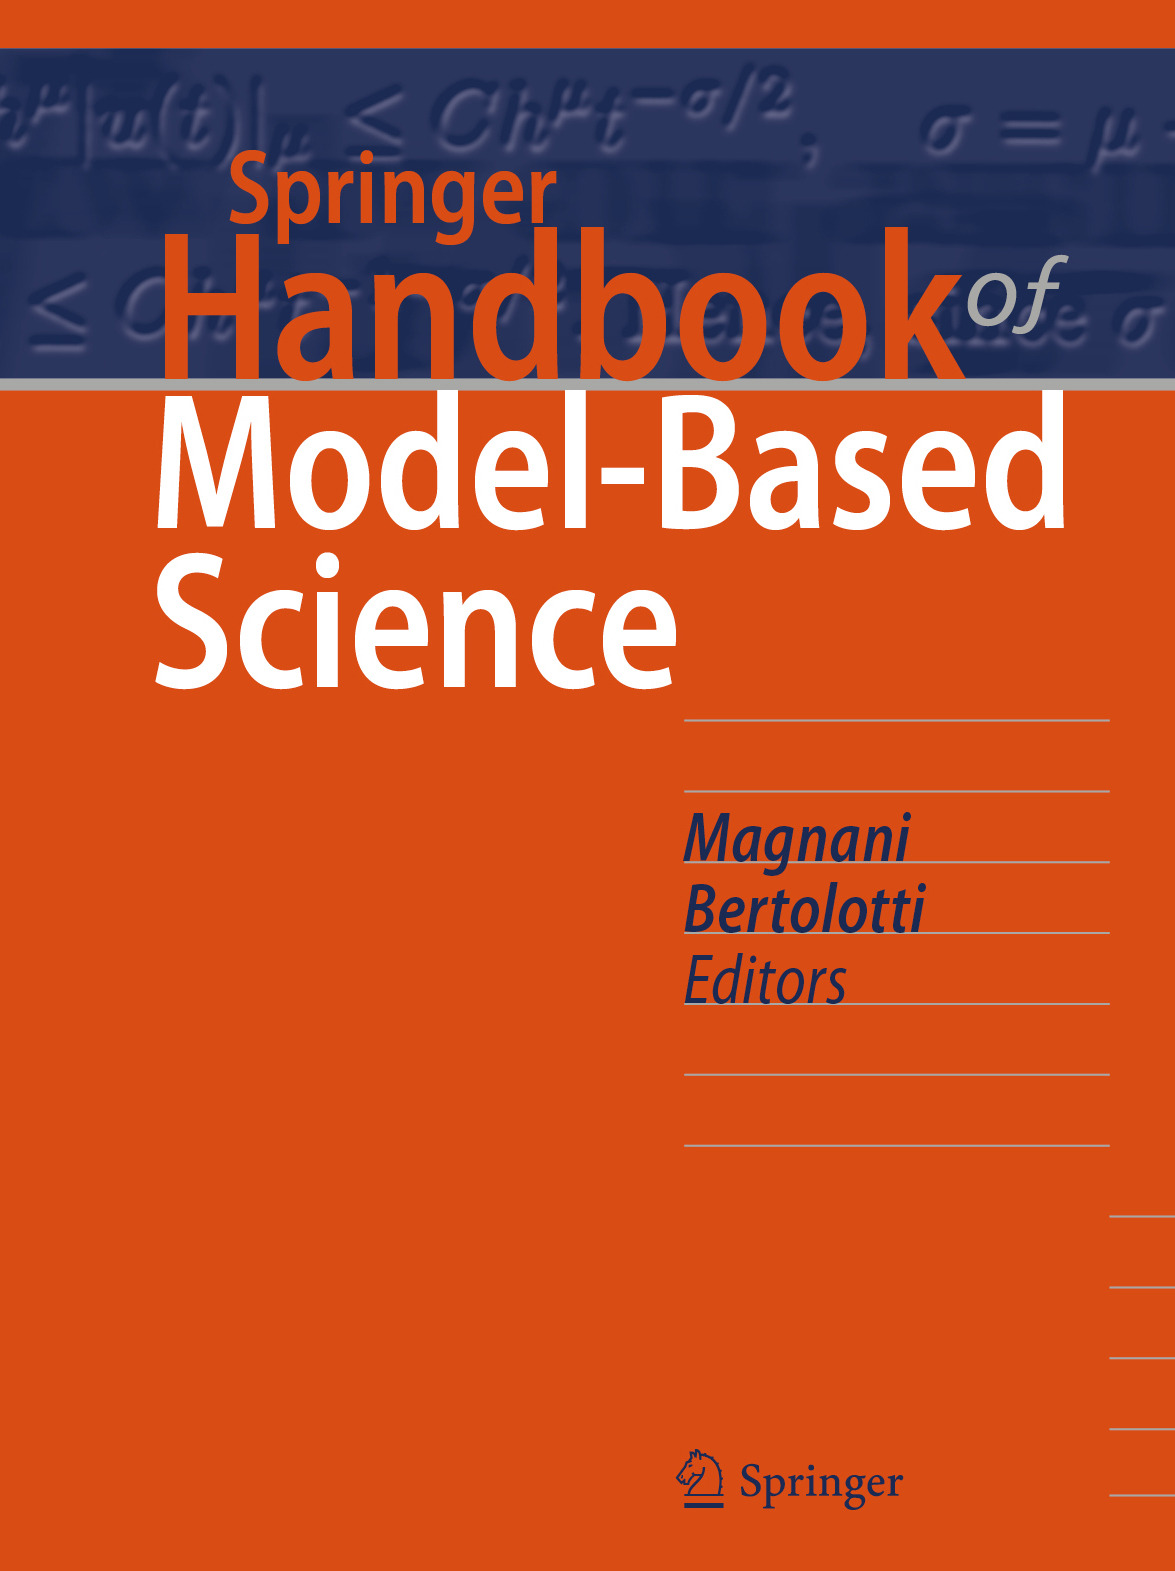 Bertolotti, Tommaso - Springer Handbook of Model-Based Science, ebook